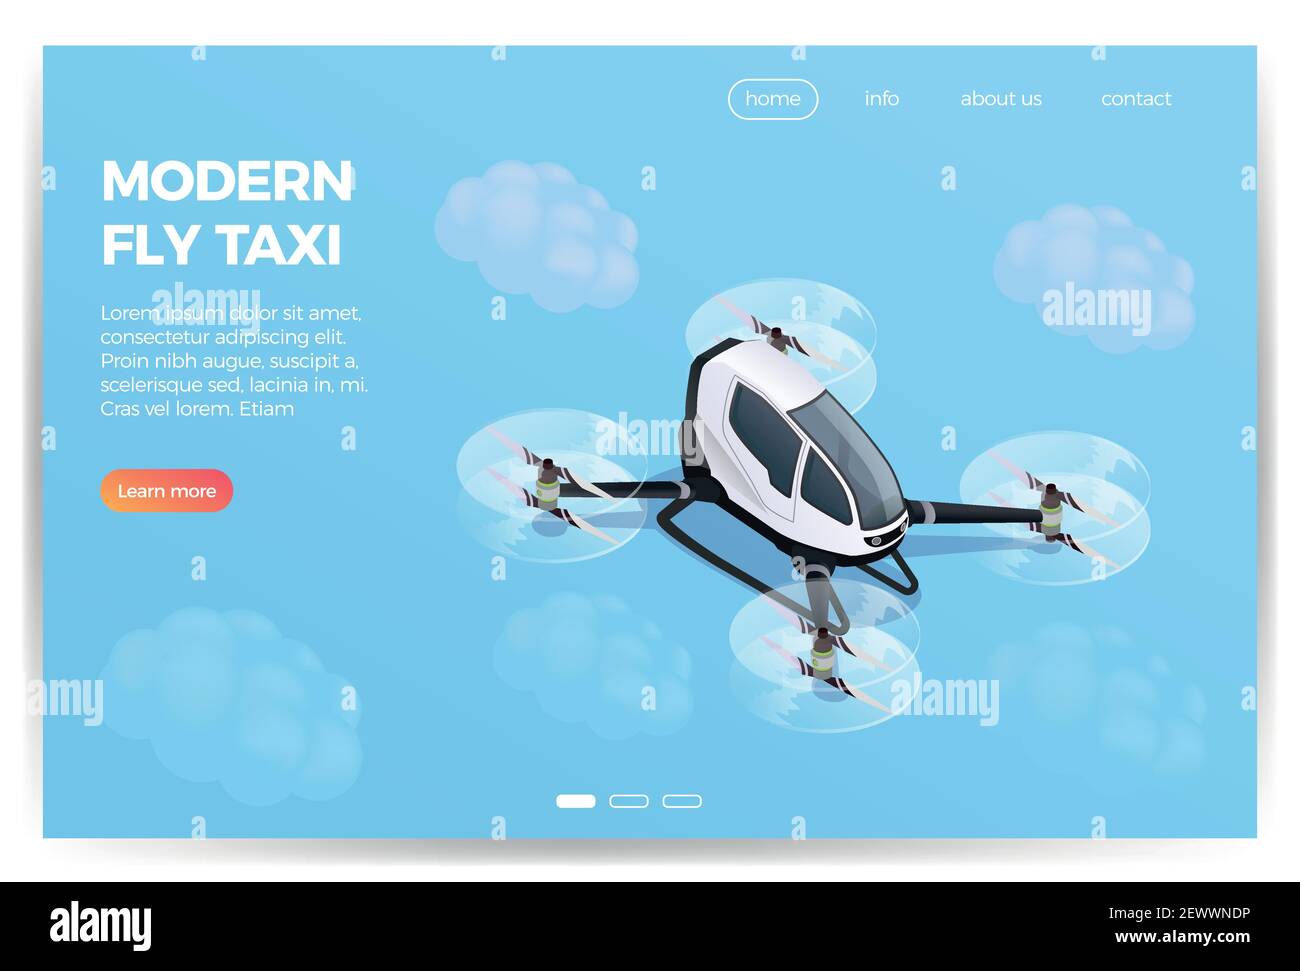 Quadrocopter Drohne Passagier-Transportgerät Service isometrische Zusammensetzung Web-Seite Design mit modernen fliegenden Taxi Vektor Illustration Stock Vektor